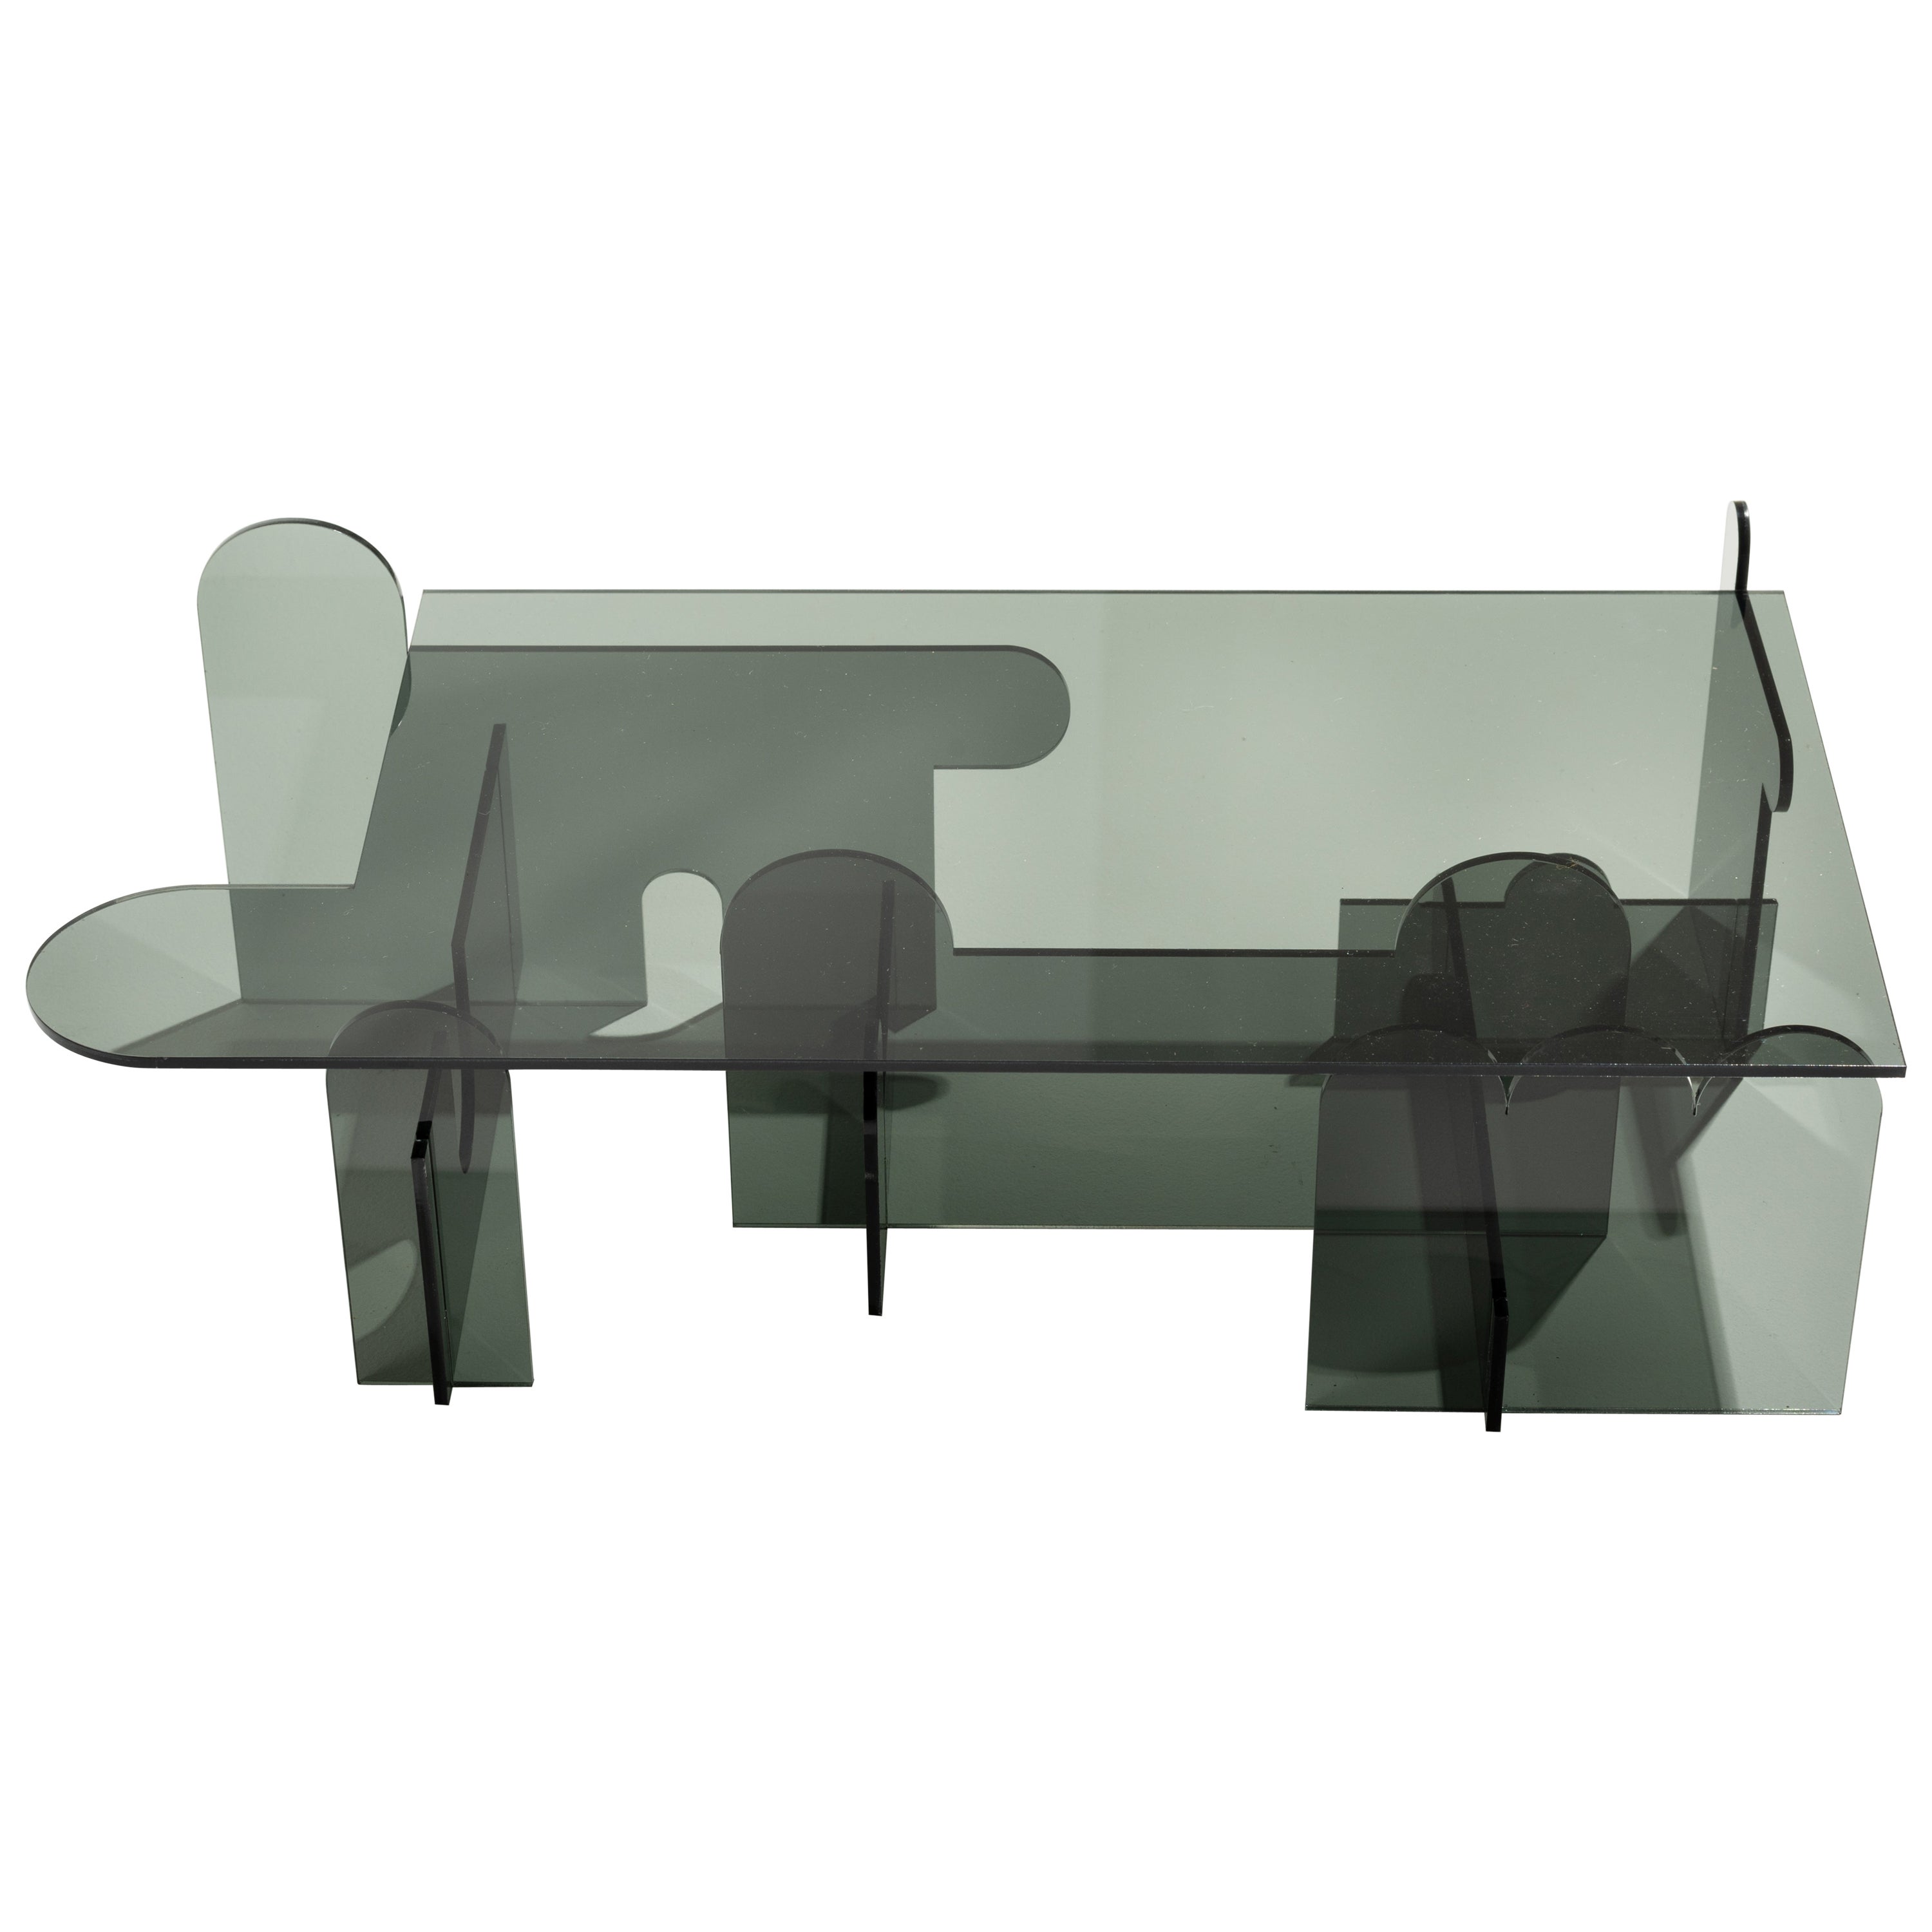 Grey Lexan Table by Phaedo